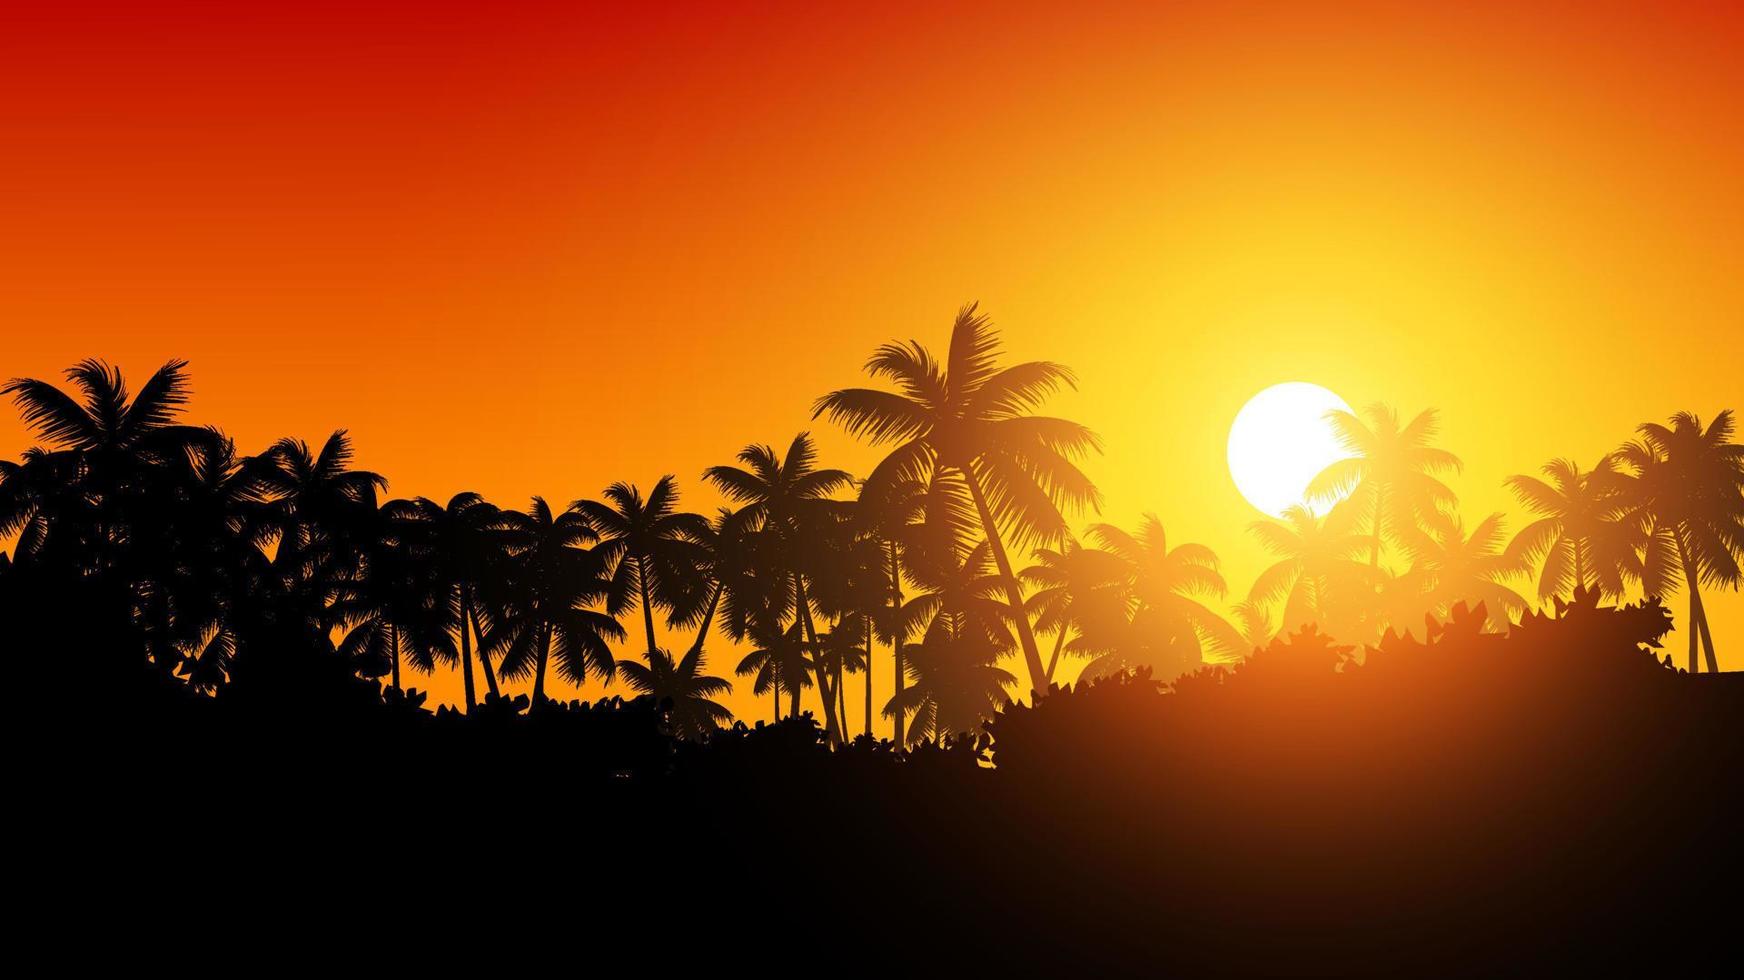 fond de nature coucher de soleil tropical avec silhouette de palmiers et rayon de soleil sur les arbres vecteur